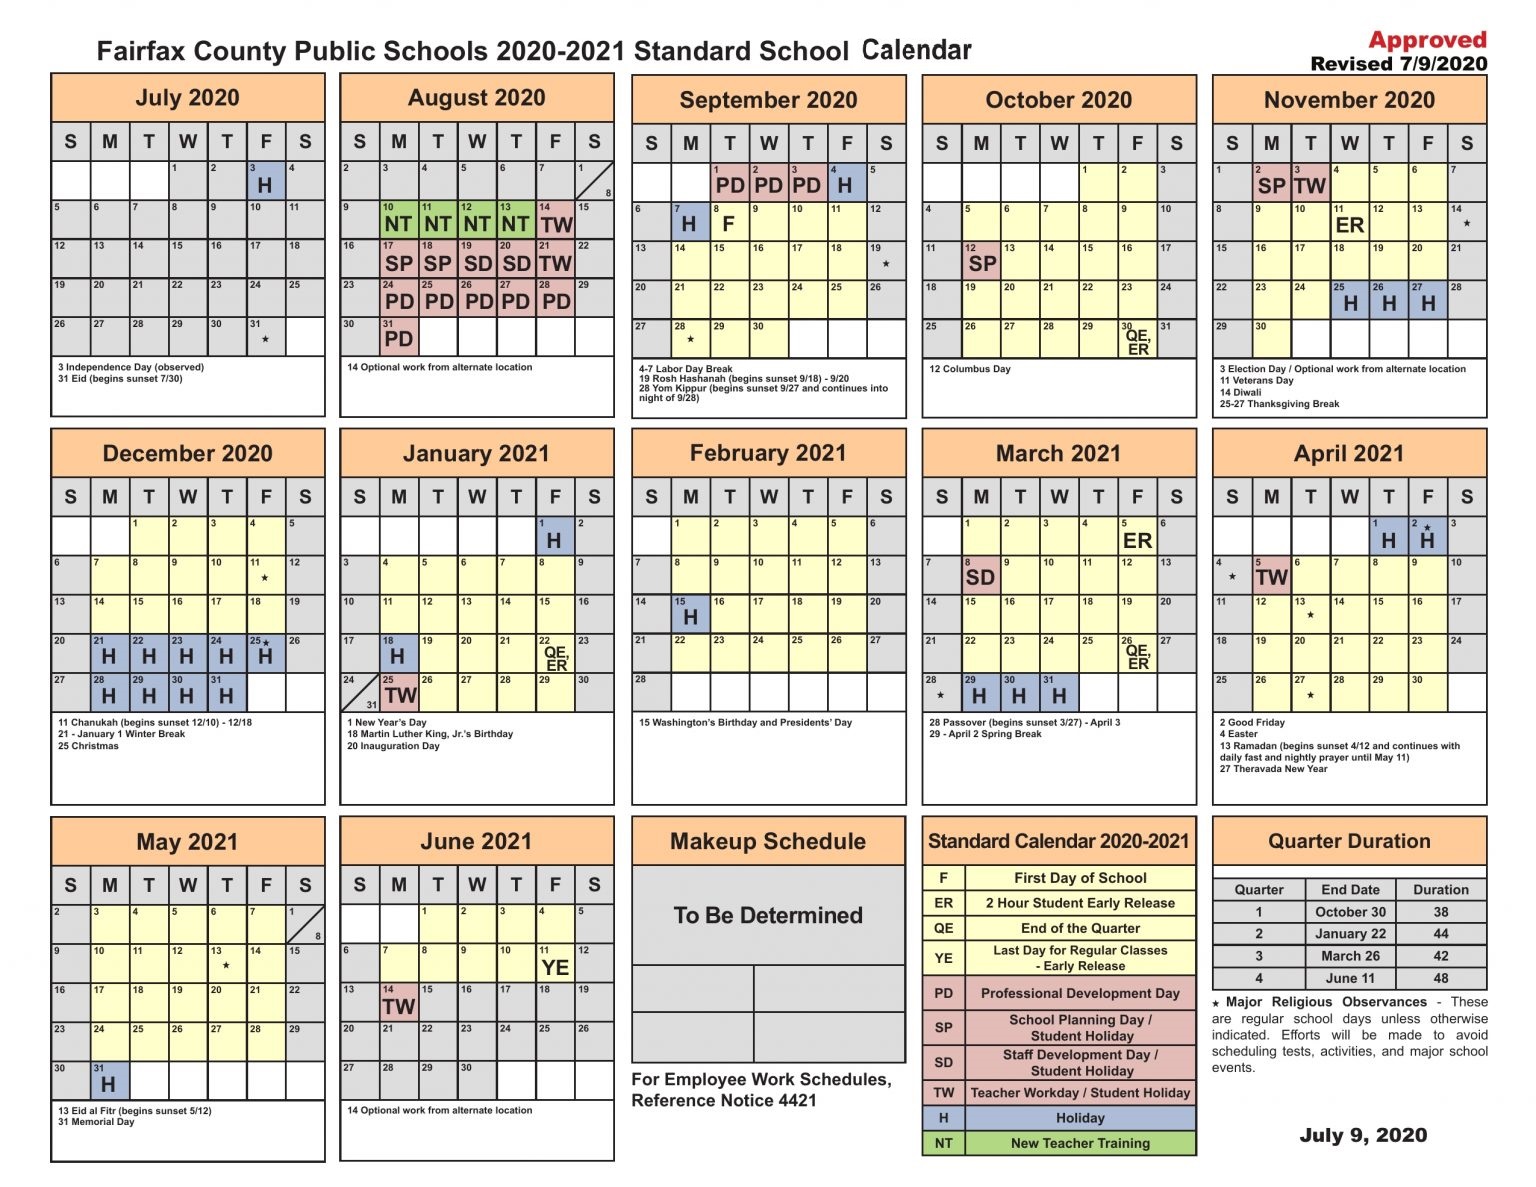 Worcester Public Schools Calendar 202424 bella margalo